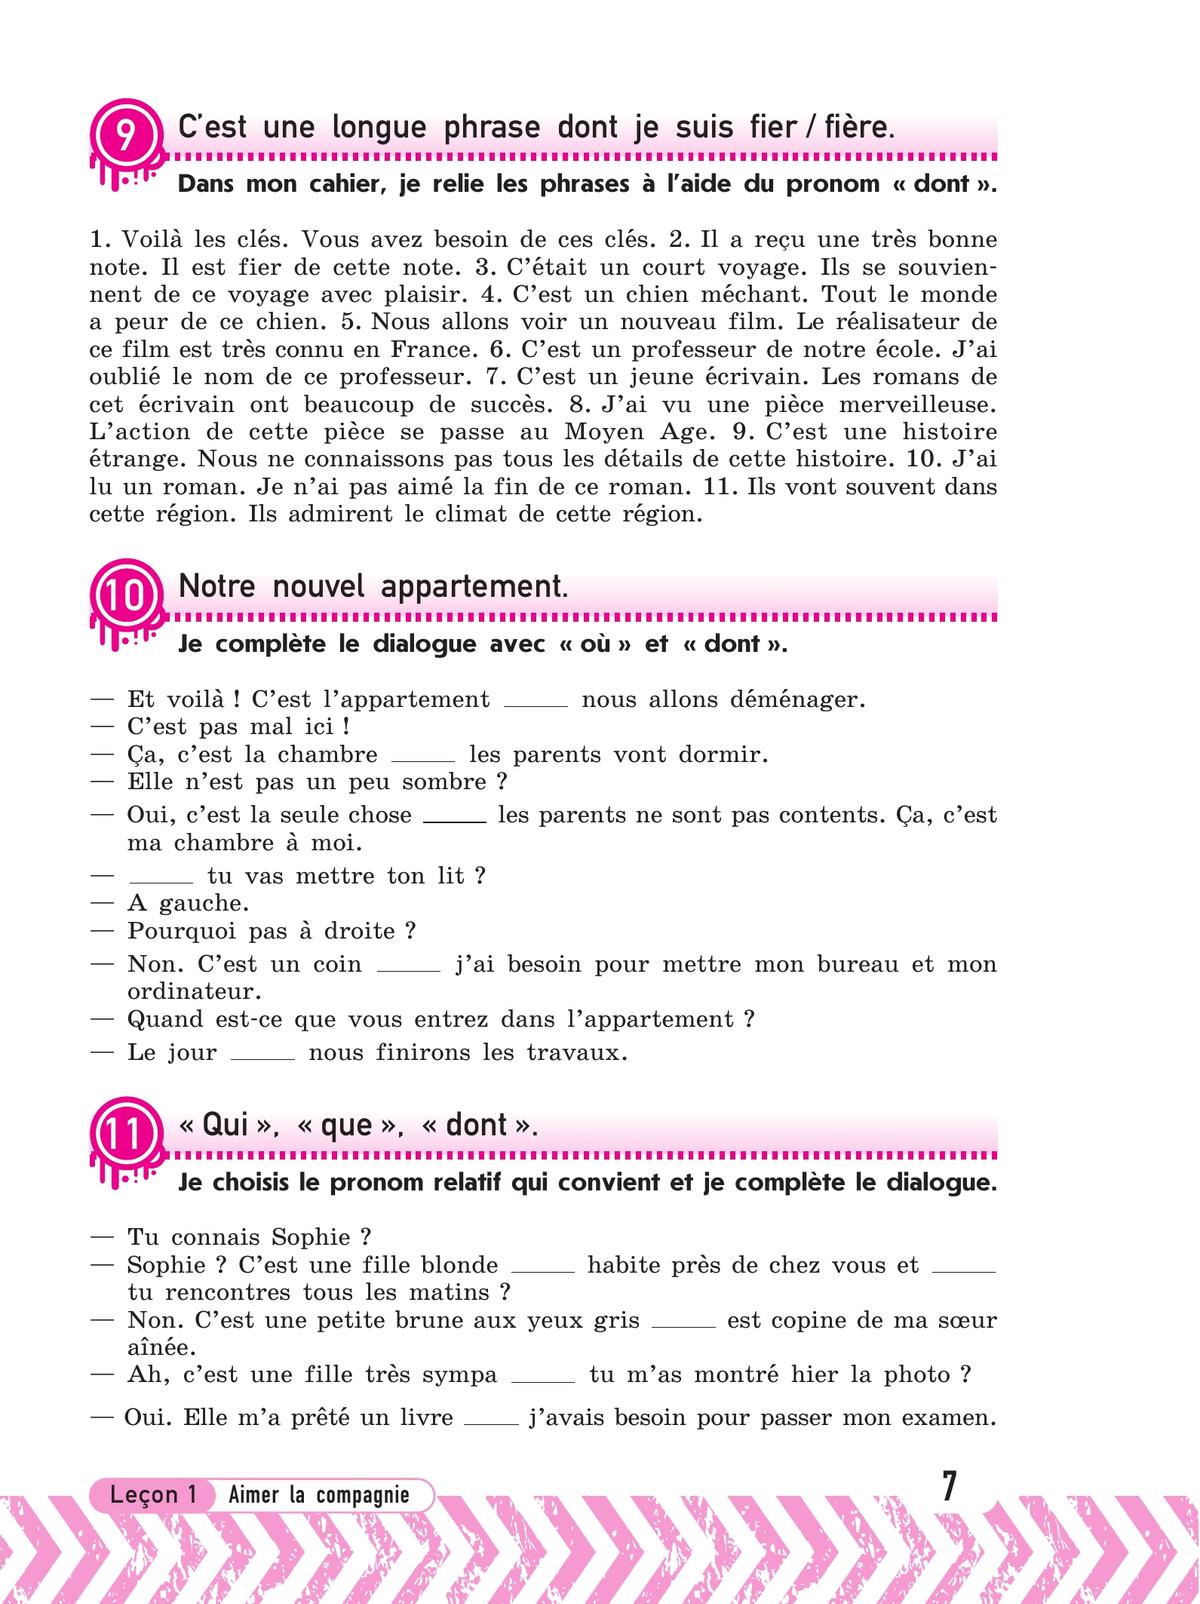 Французский язык. Рабочая тетрадь. 7 класс 9